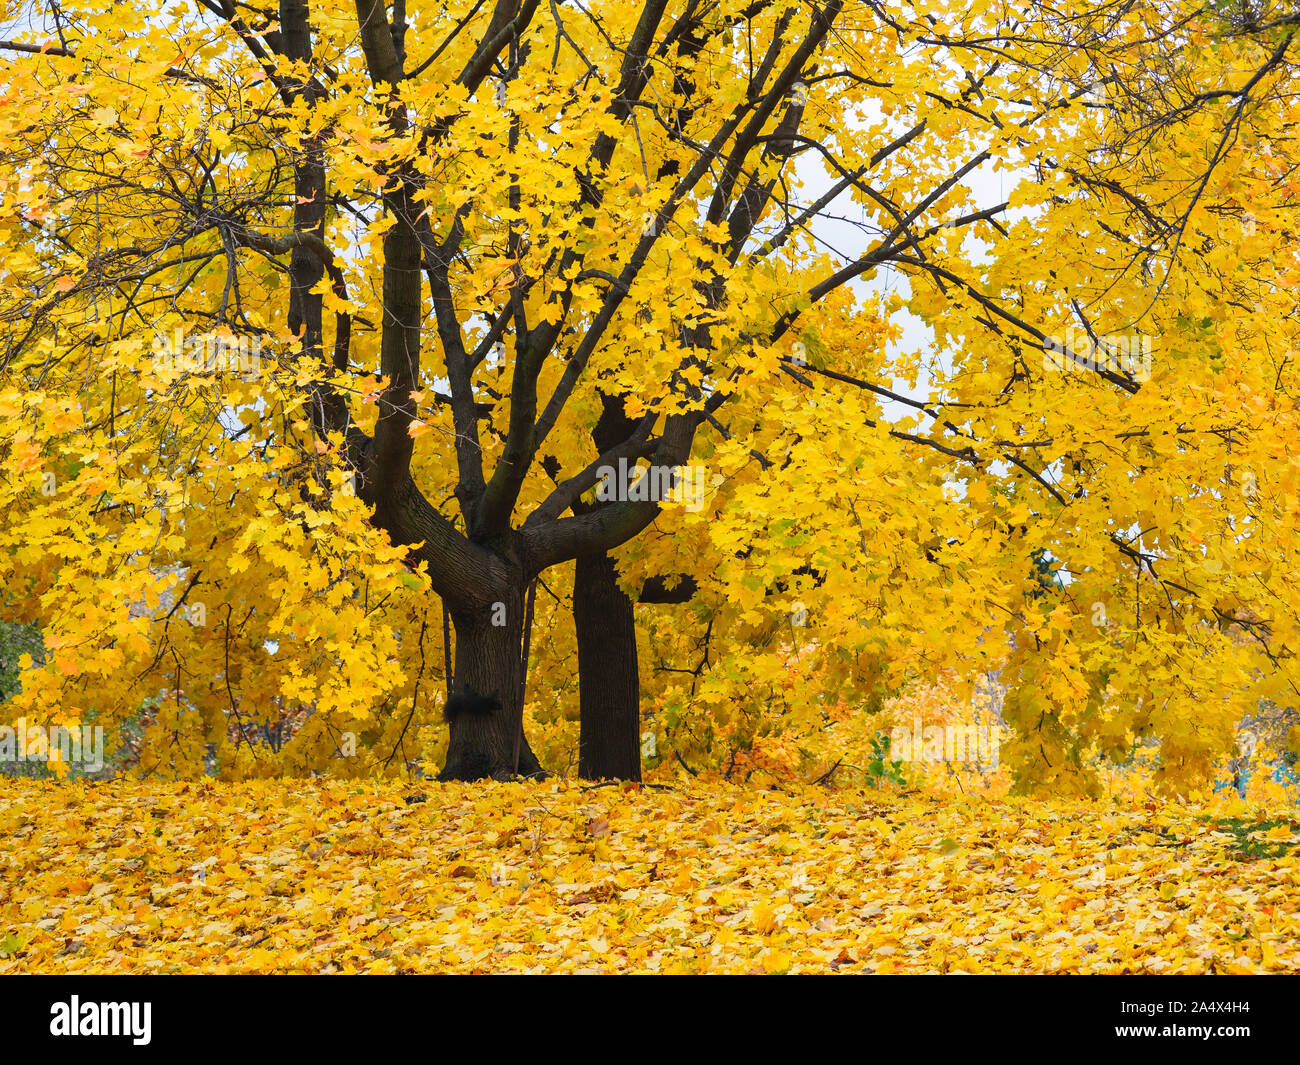 Goldene gelbe Blätter auf Ahorn Baum mit langen Zweigen und einem schwarzen Eichhörnchen auf dem Baumstamm. Stockfoto